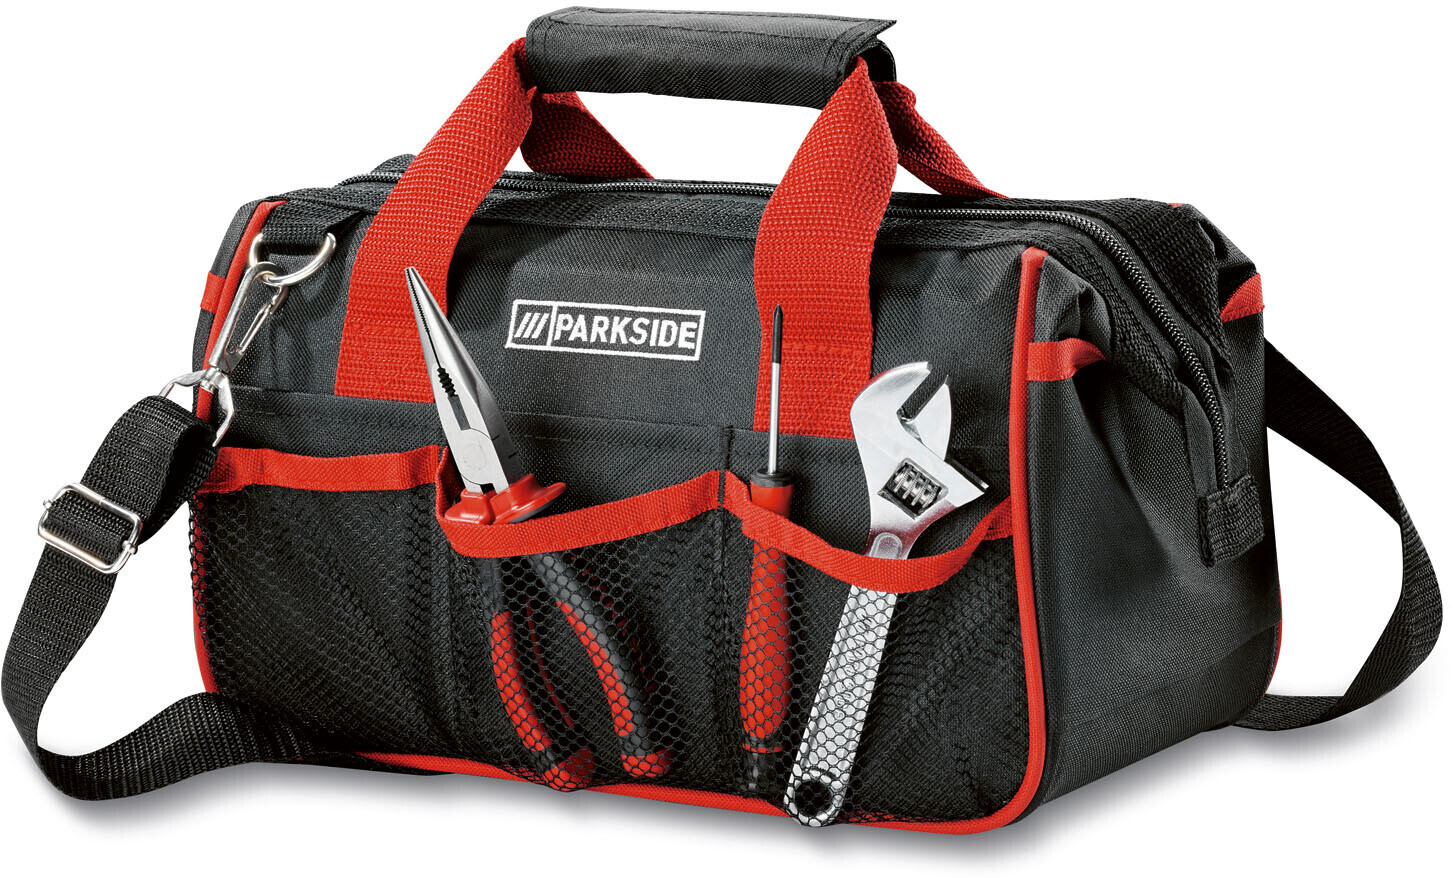 befüllt € Werkzeugtasche 23-teilig bei Parkside Preisvergleich 32,99 ab |